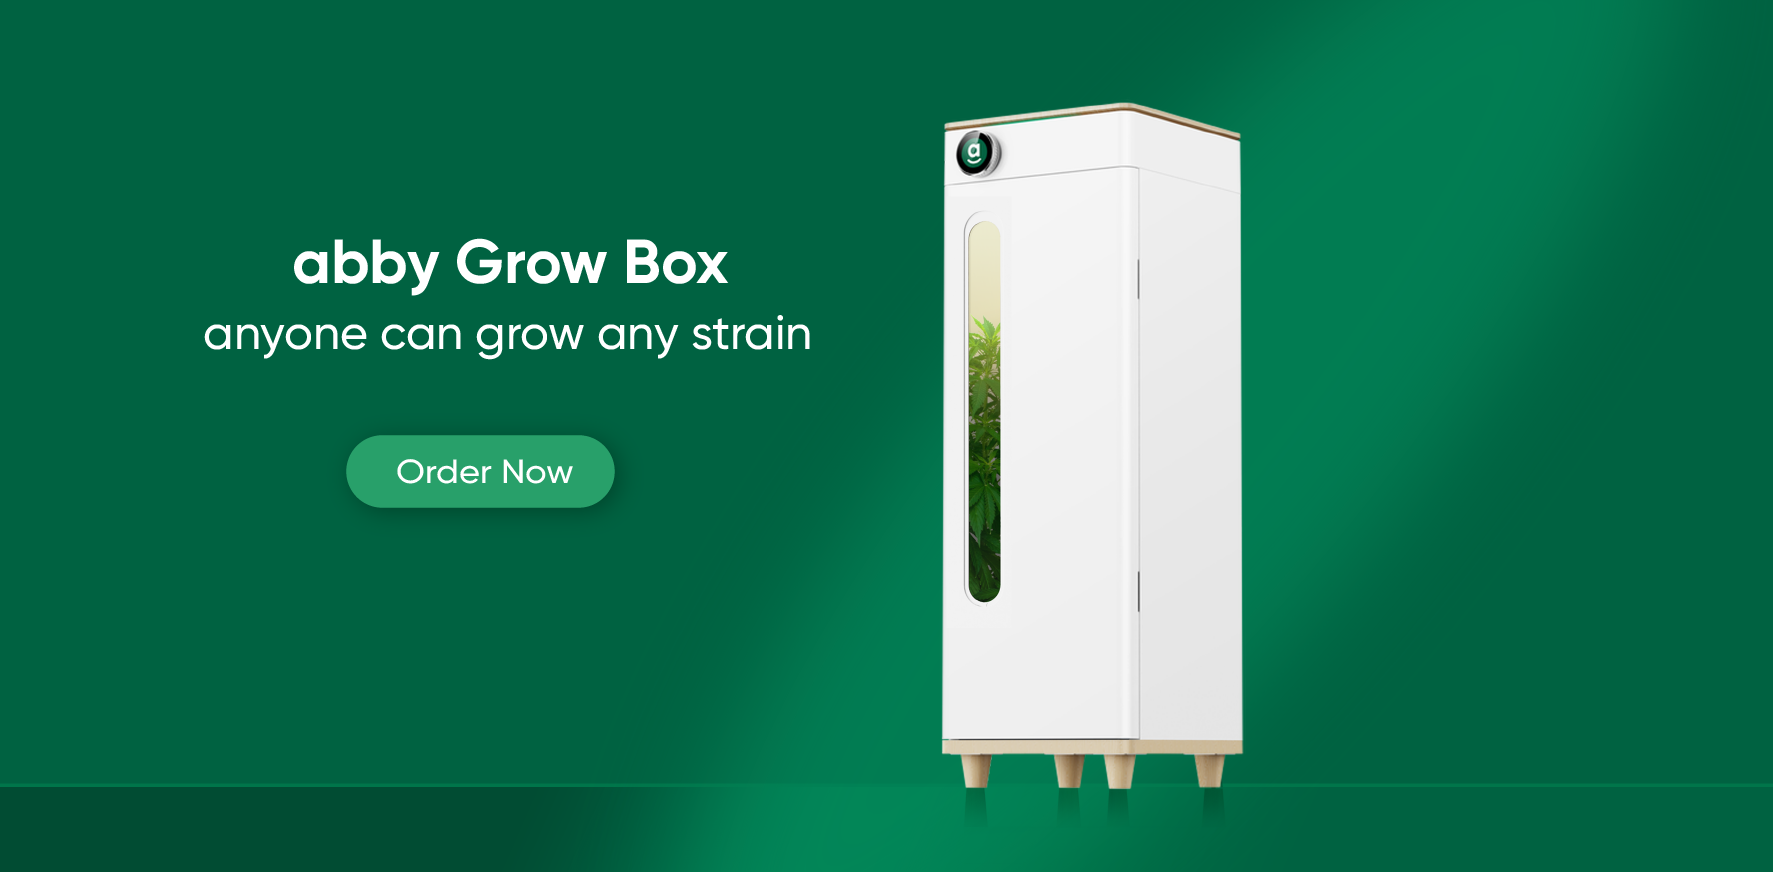 abby fully automated grow box